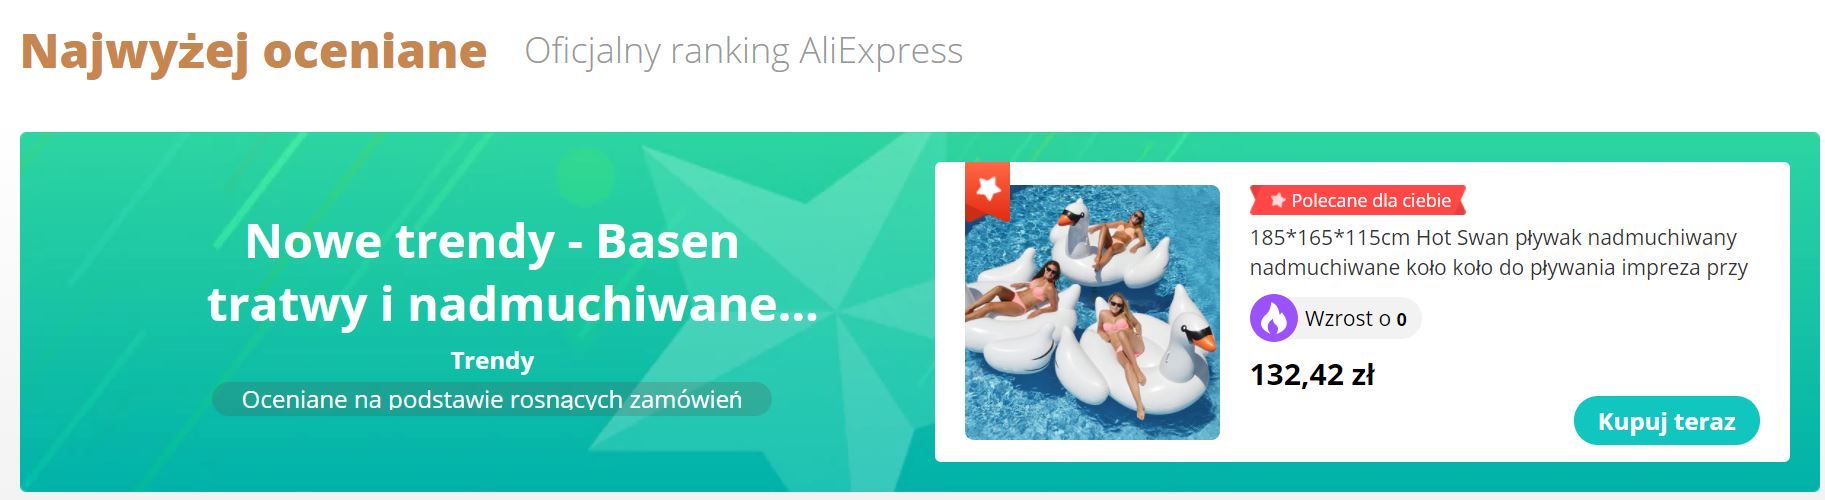 Odkrywaj trendy - nowa promocja Aliexpress - ranking zabawek basenowych z Aliexpress